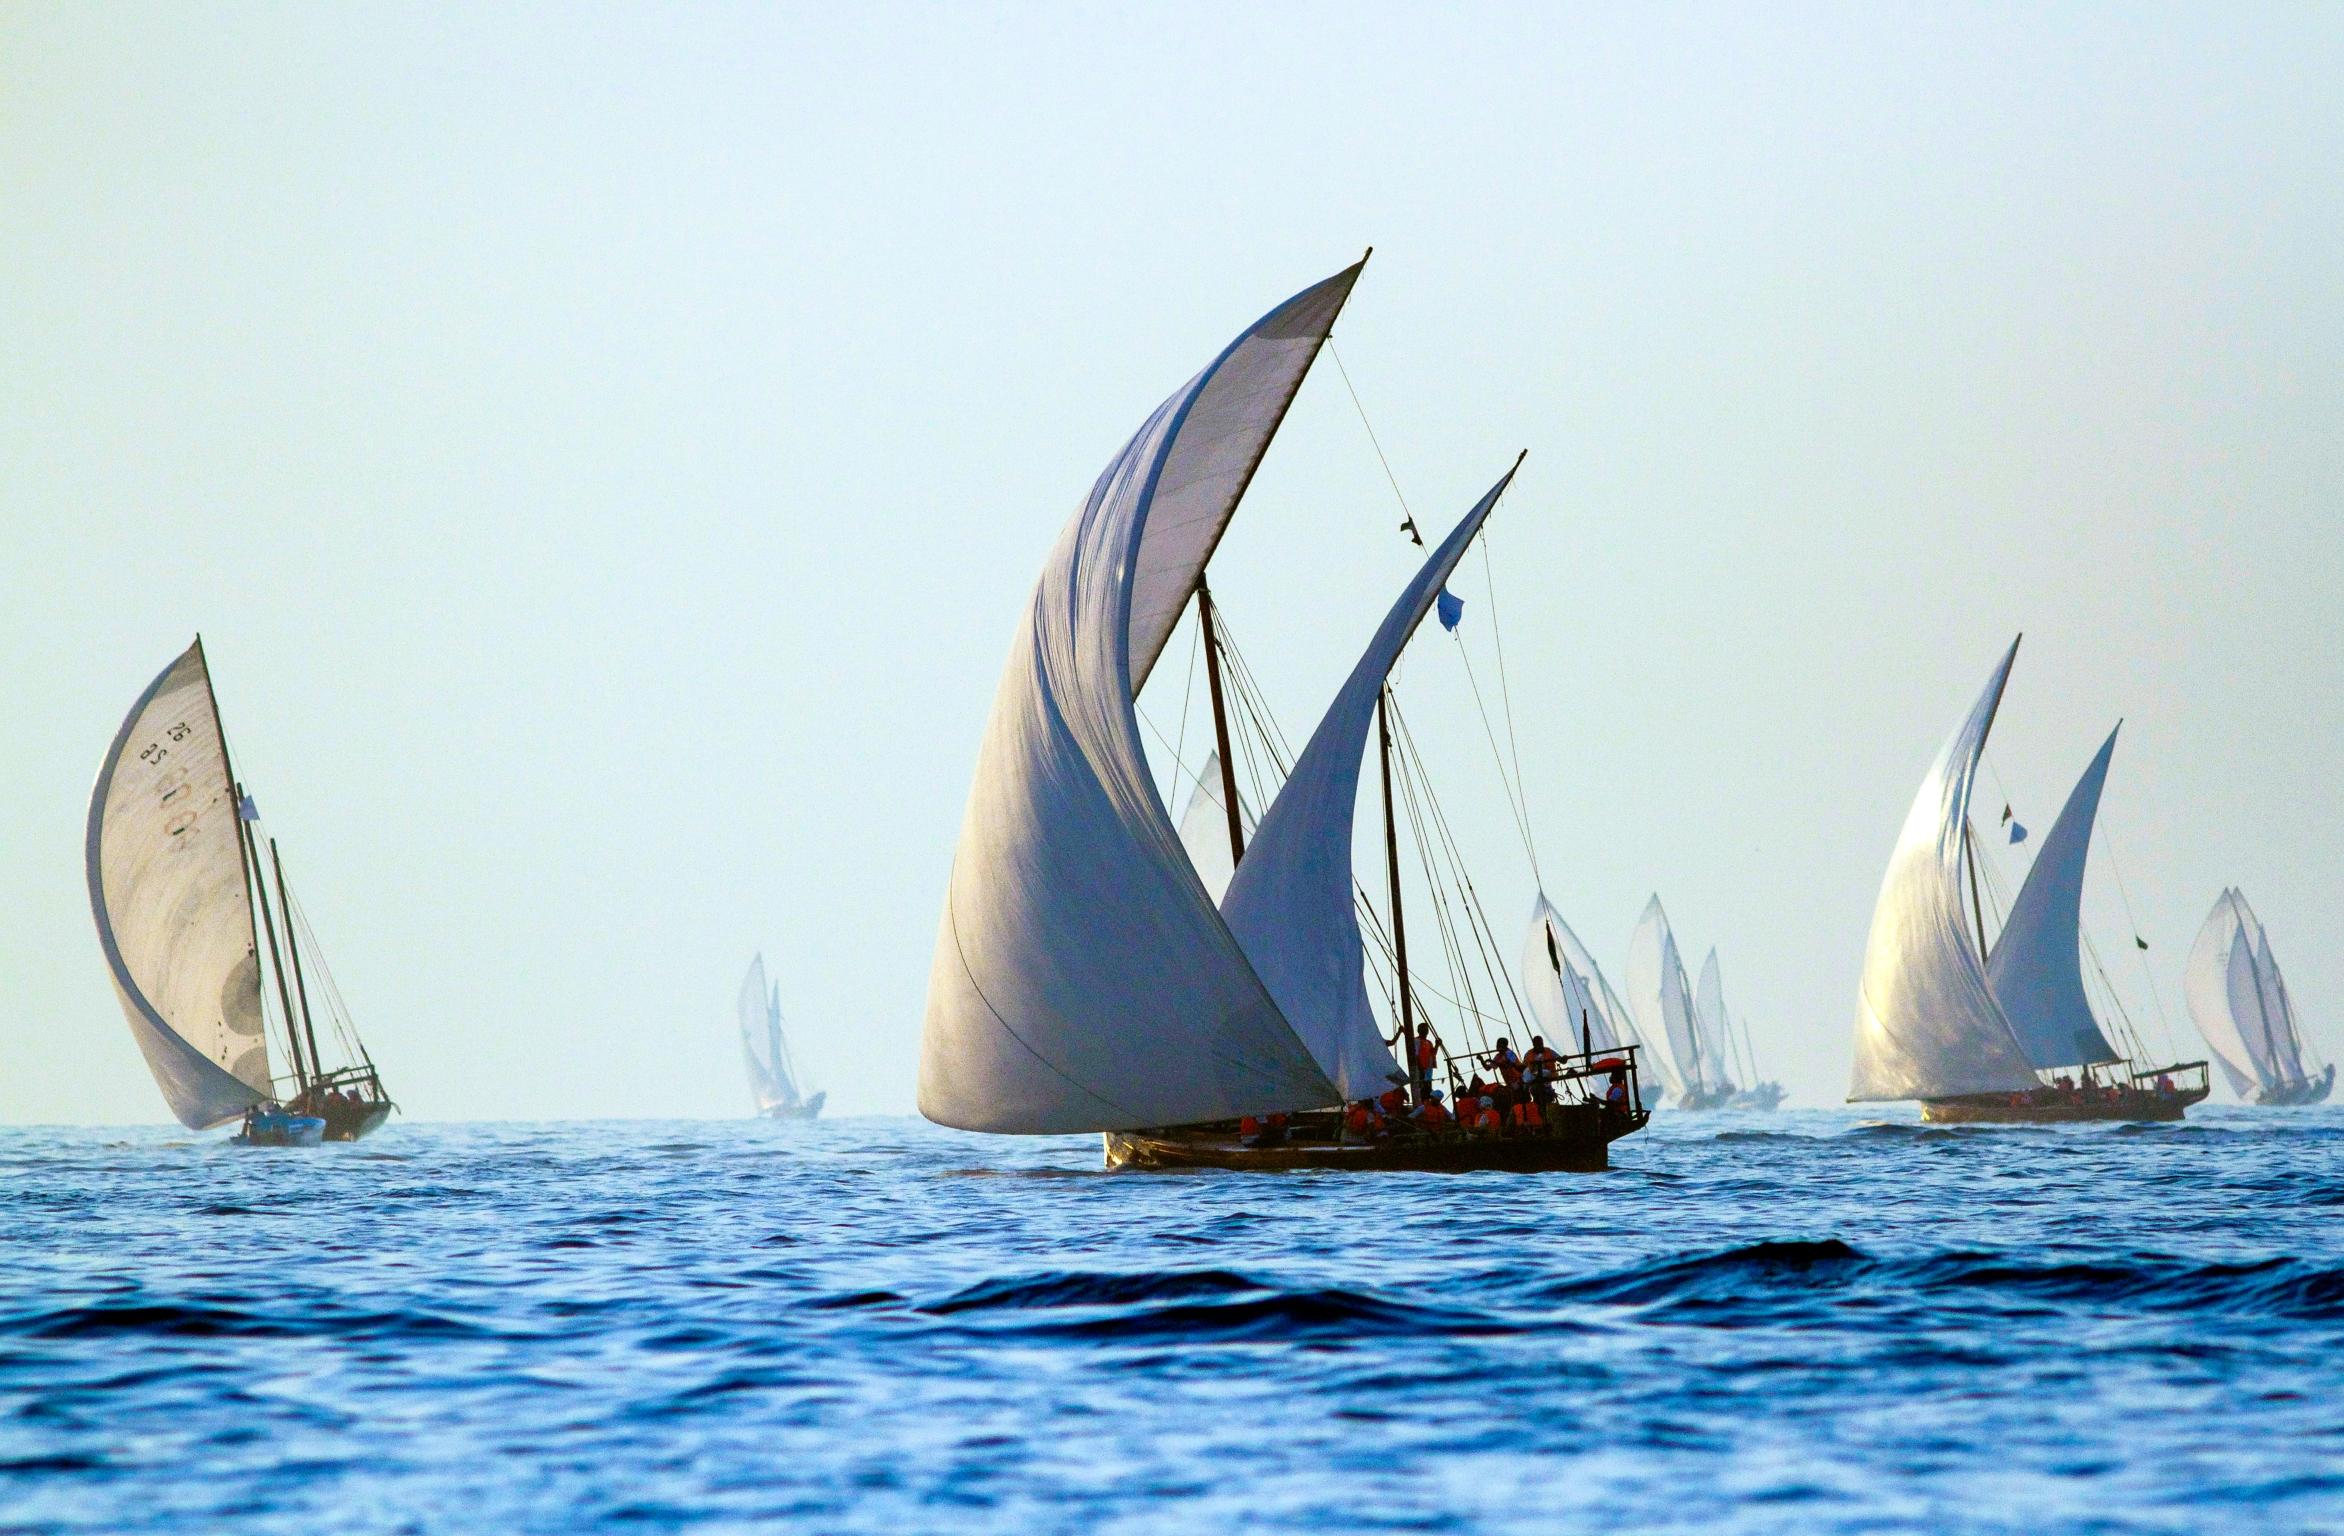 Inspiration
La famille de meubles Dhow fait référence aux voiles ondulantes des bateaux traditionnels omanais. 
une partie importante de l'histoire maritime de la nation des marins.

Artisanat
Bethan a réimaginé le mouvement des voiles dans un